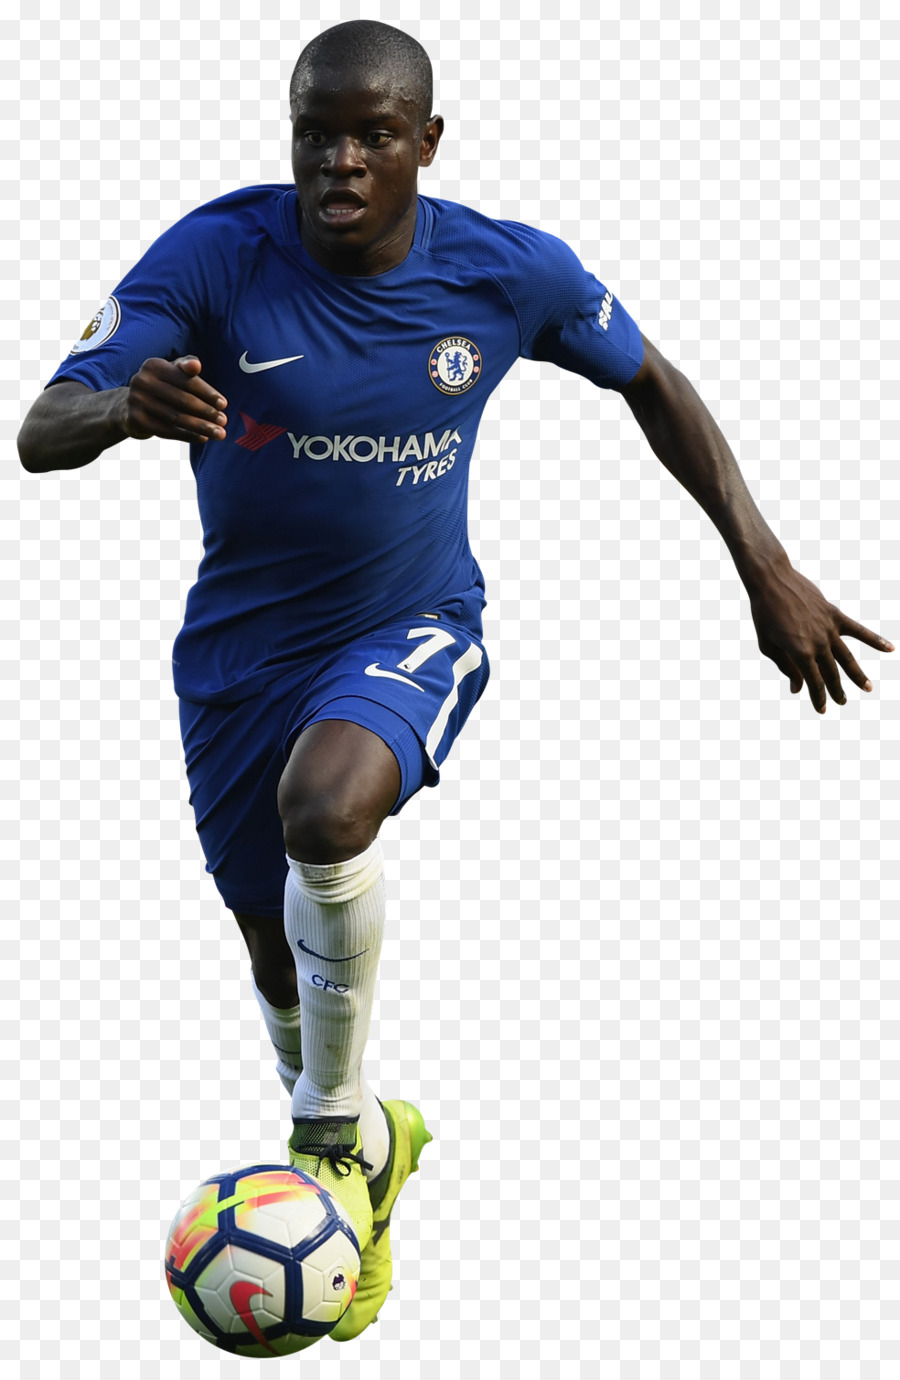 Nicht Golo Kanté Chelsea F. C., Premier League, Football player - Premier League